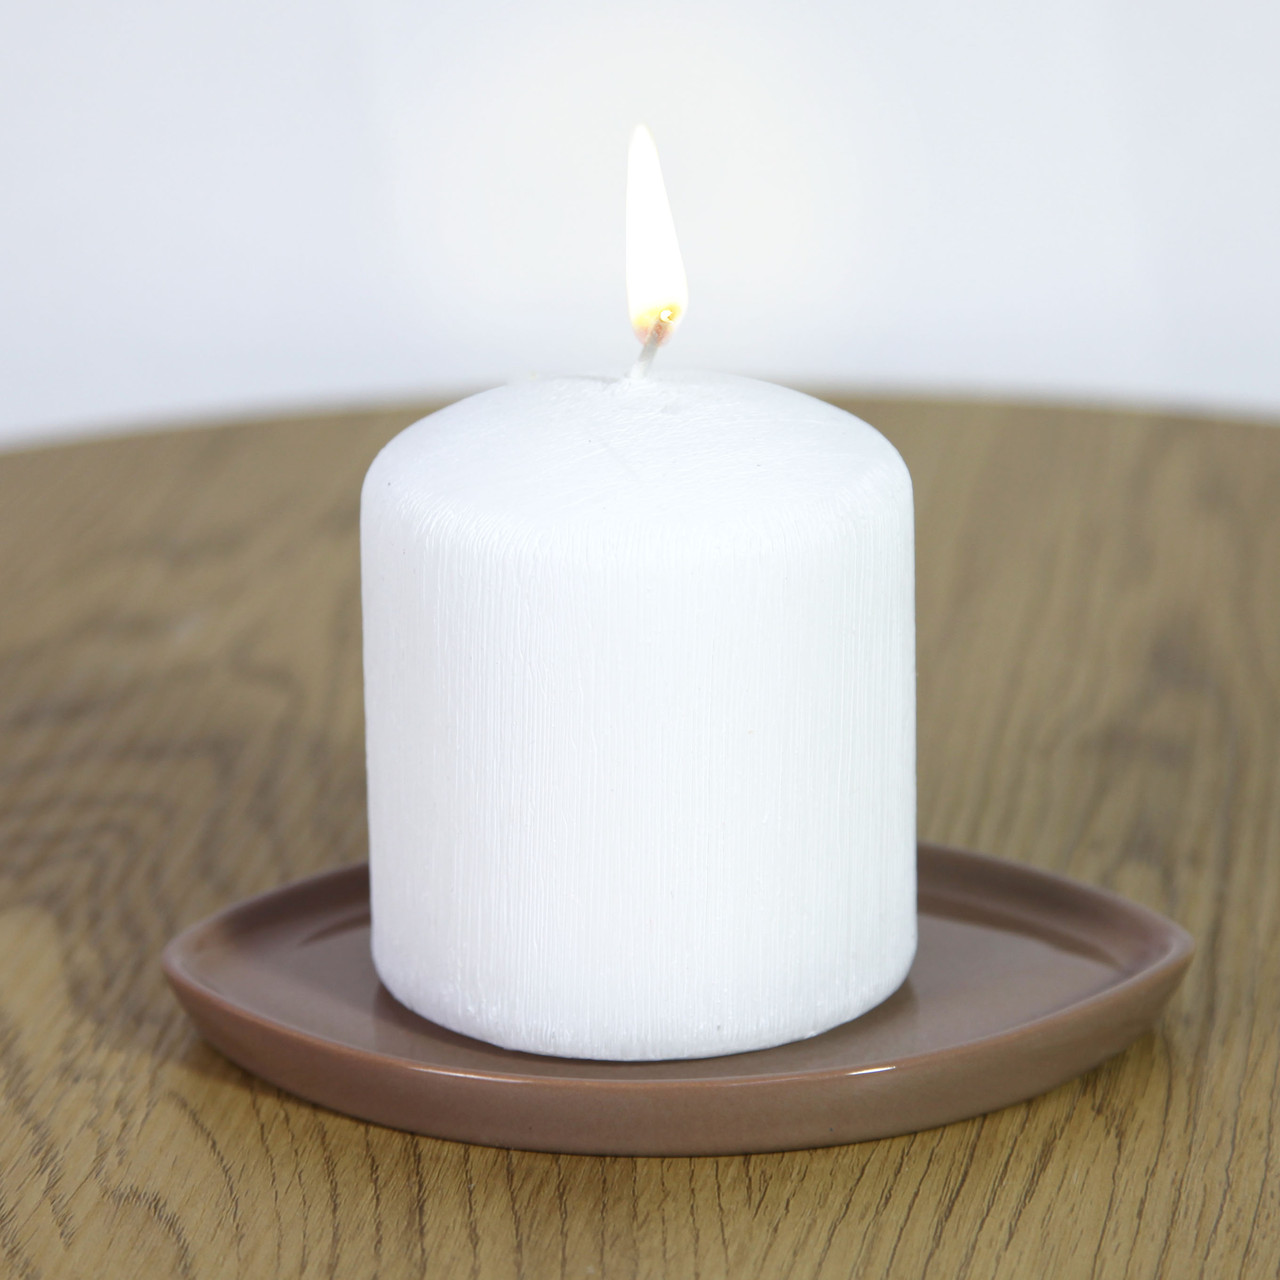 Підсвічник підставка керамічна Лист коричневий 16 см для товстої свічки